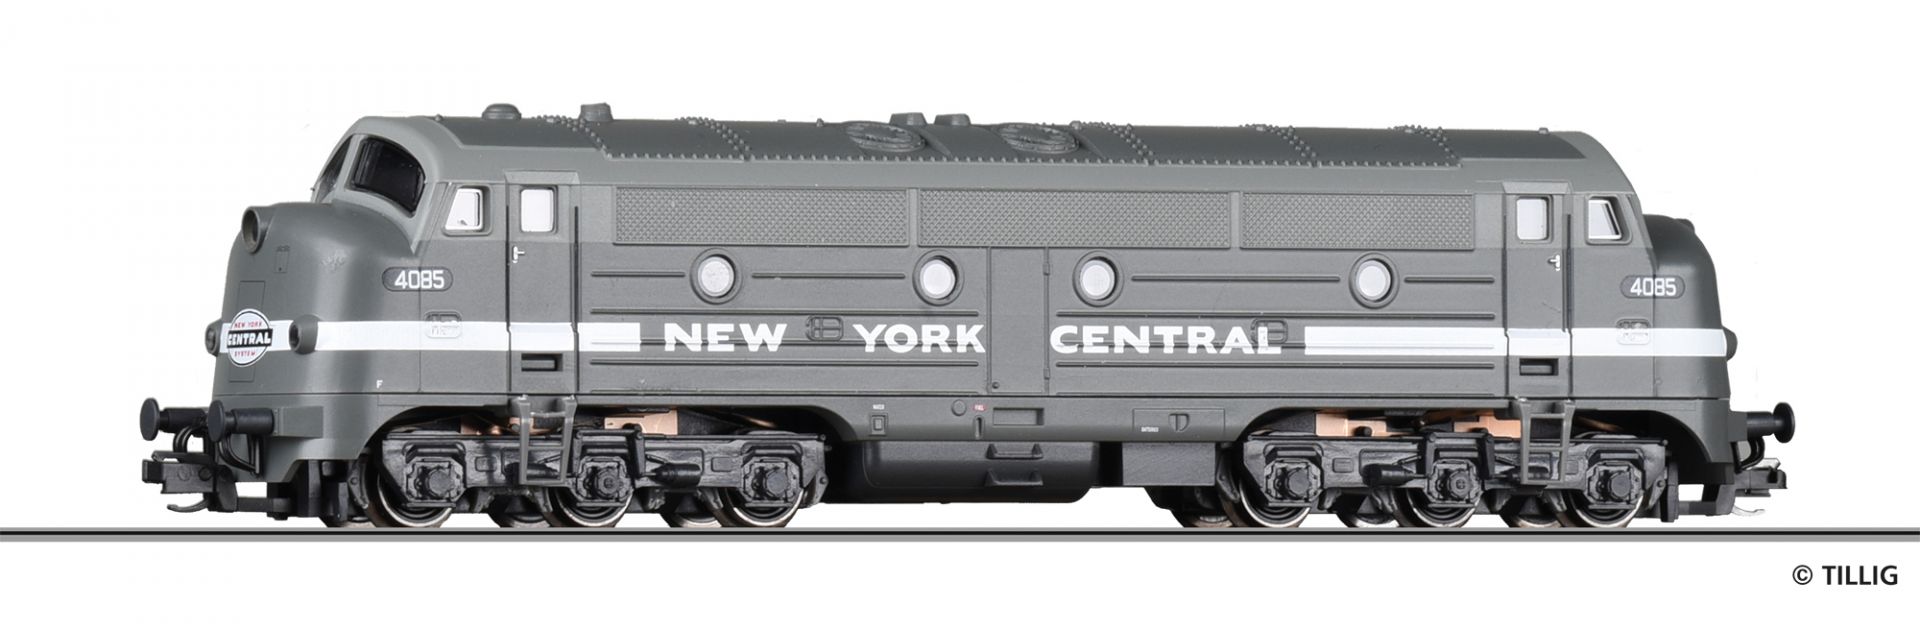 502169 | Diesellokomotive New York Central -werksseitig ausverkauft-